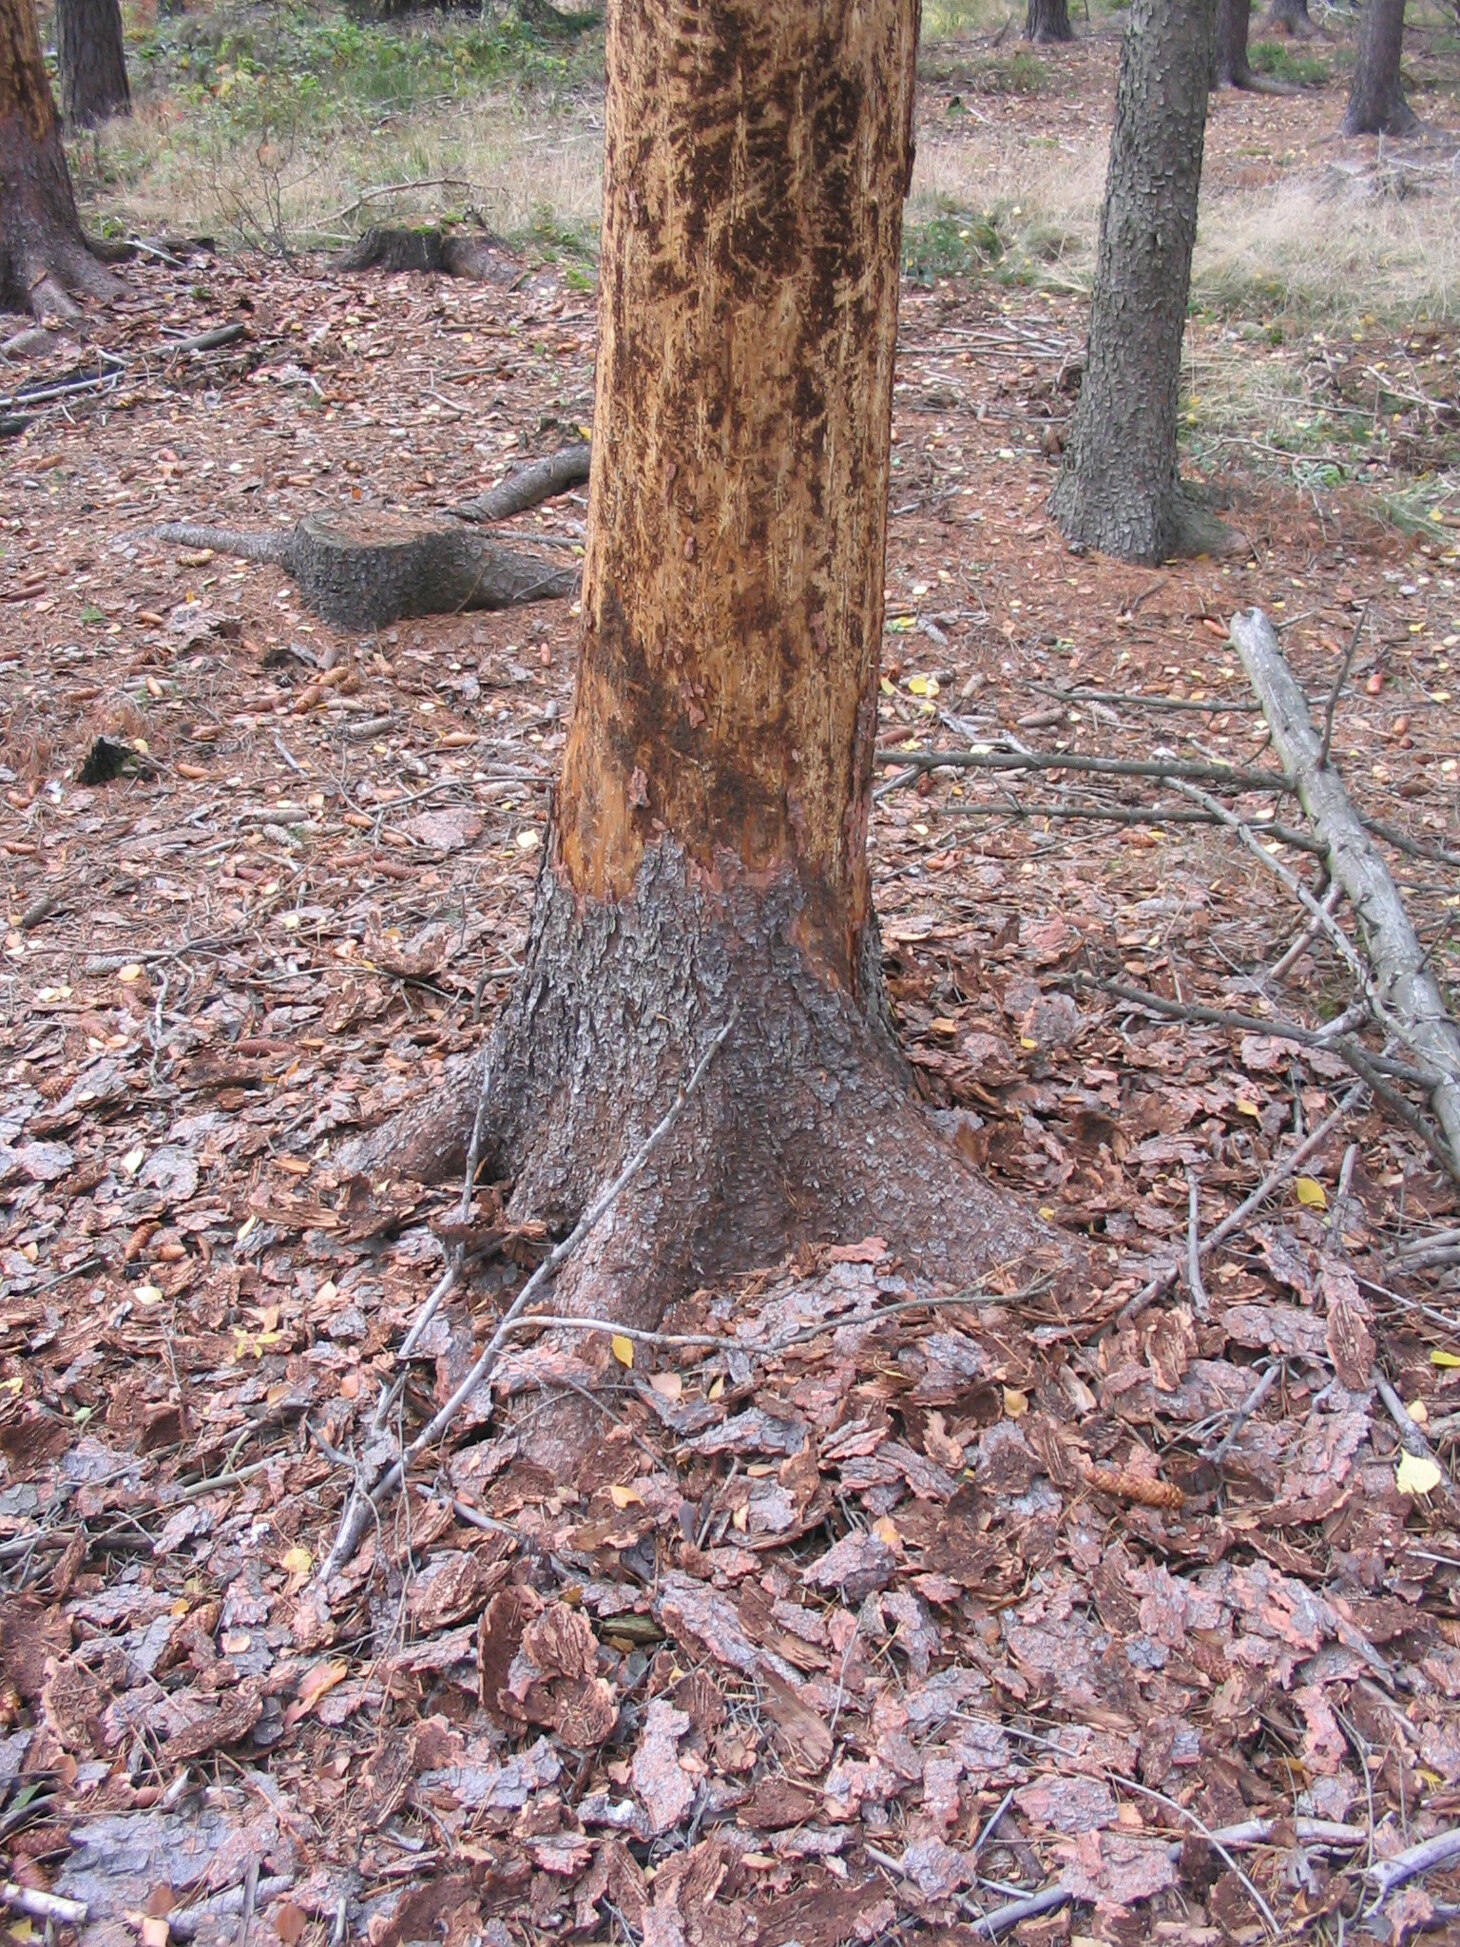 Stamm eines Nadelbaumes im Bodenbereich mit großflächig abgefallener Rinde